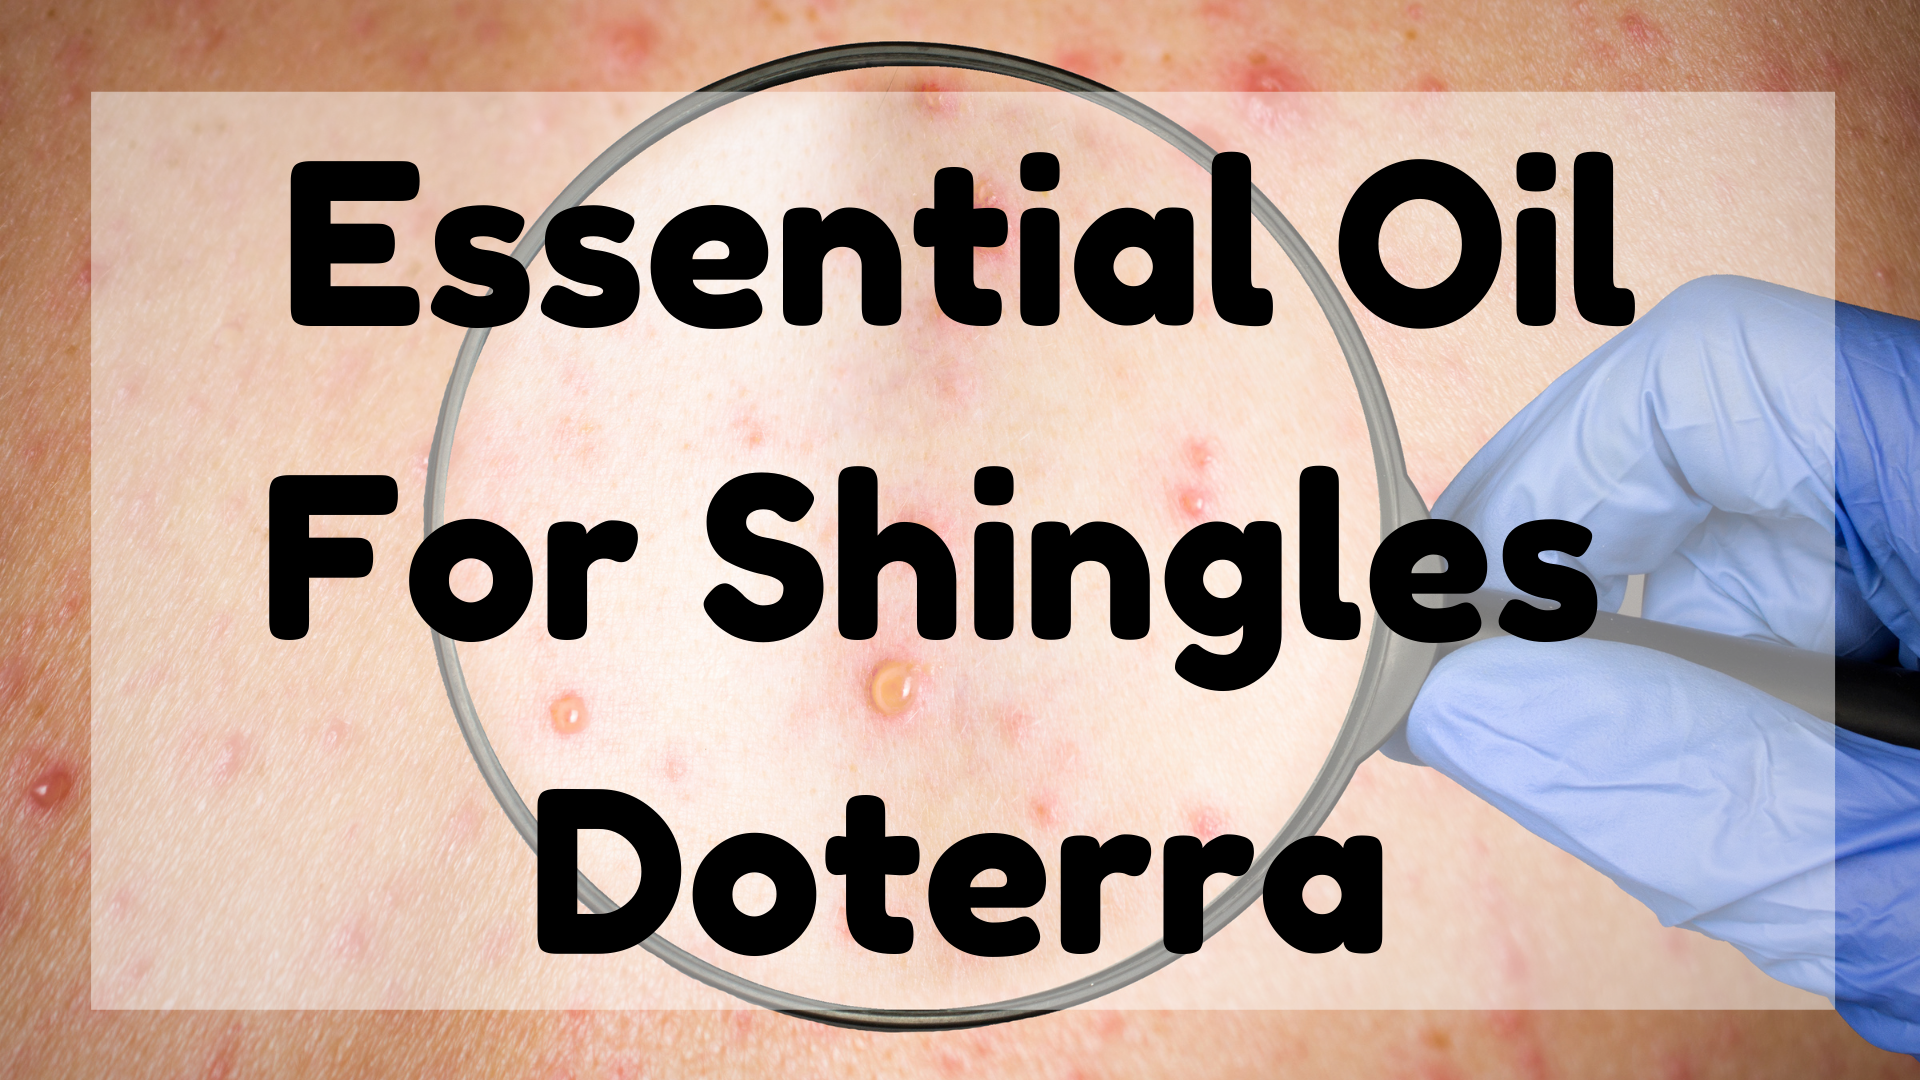 Essential Oil For Shingles - Doterra